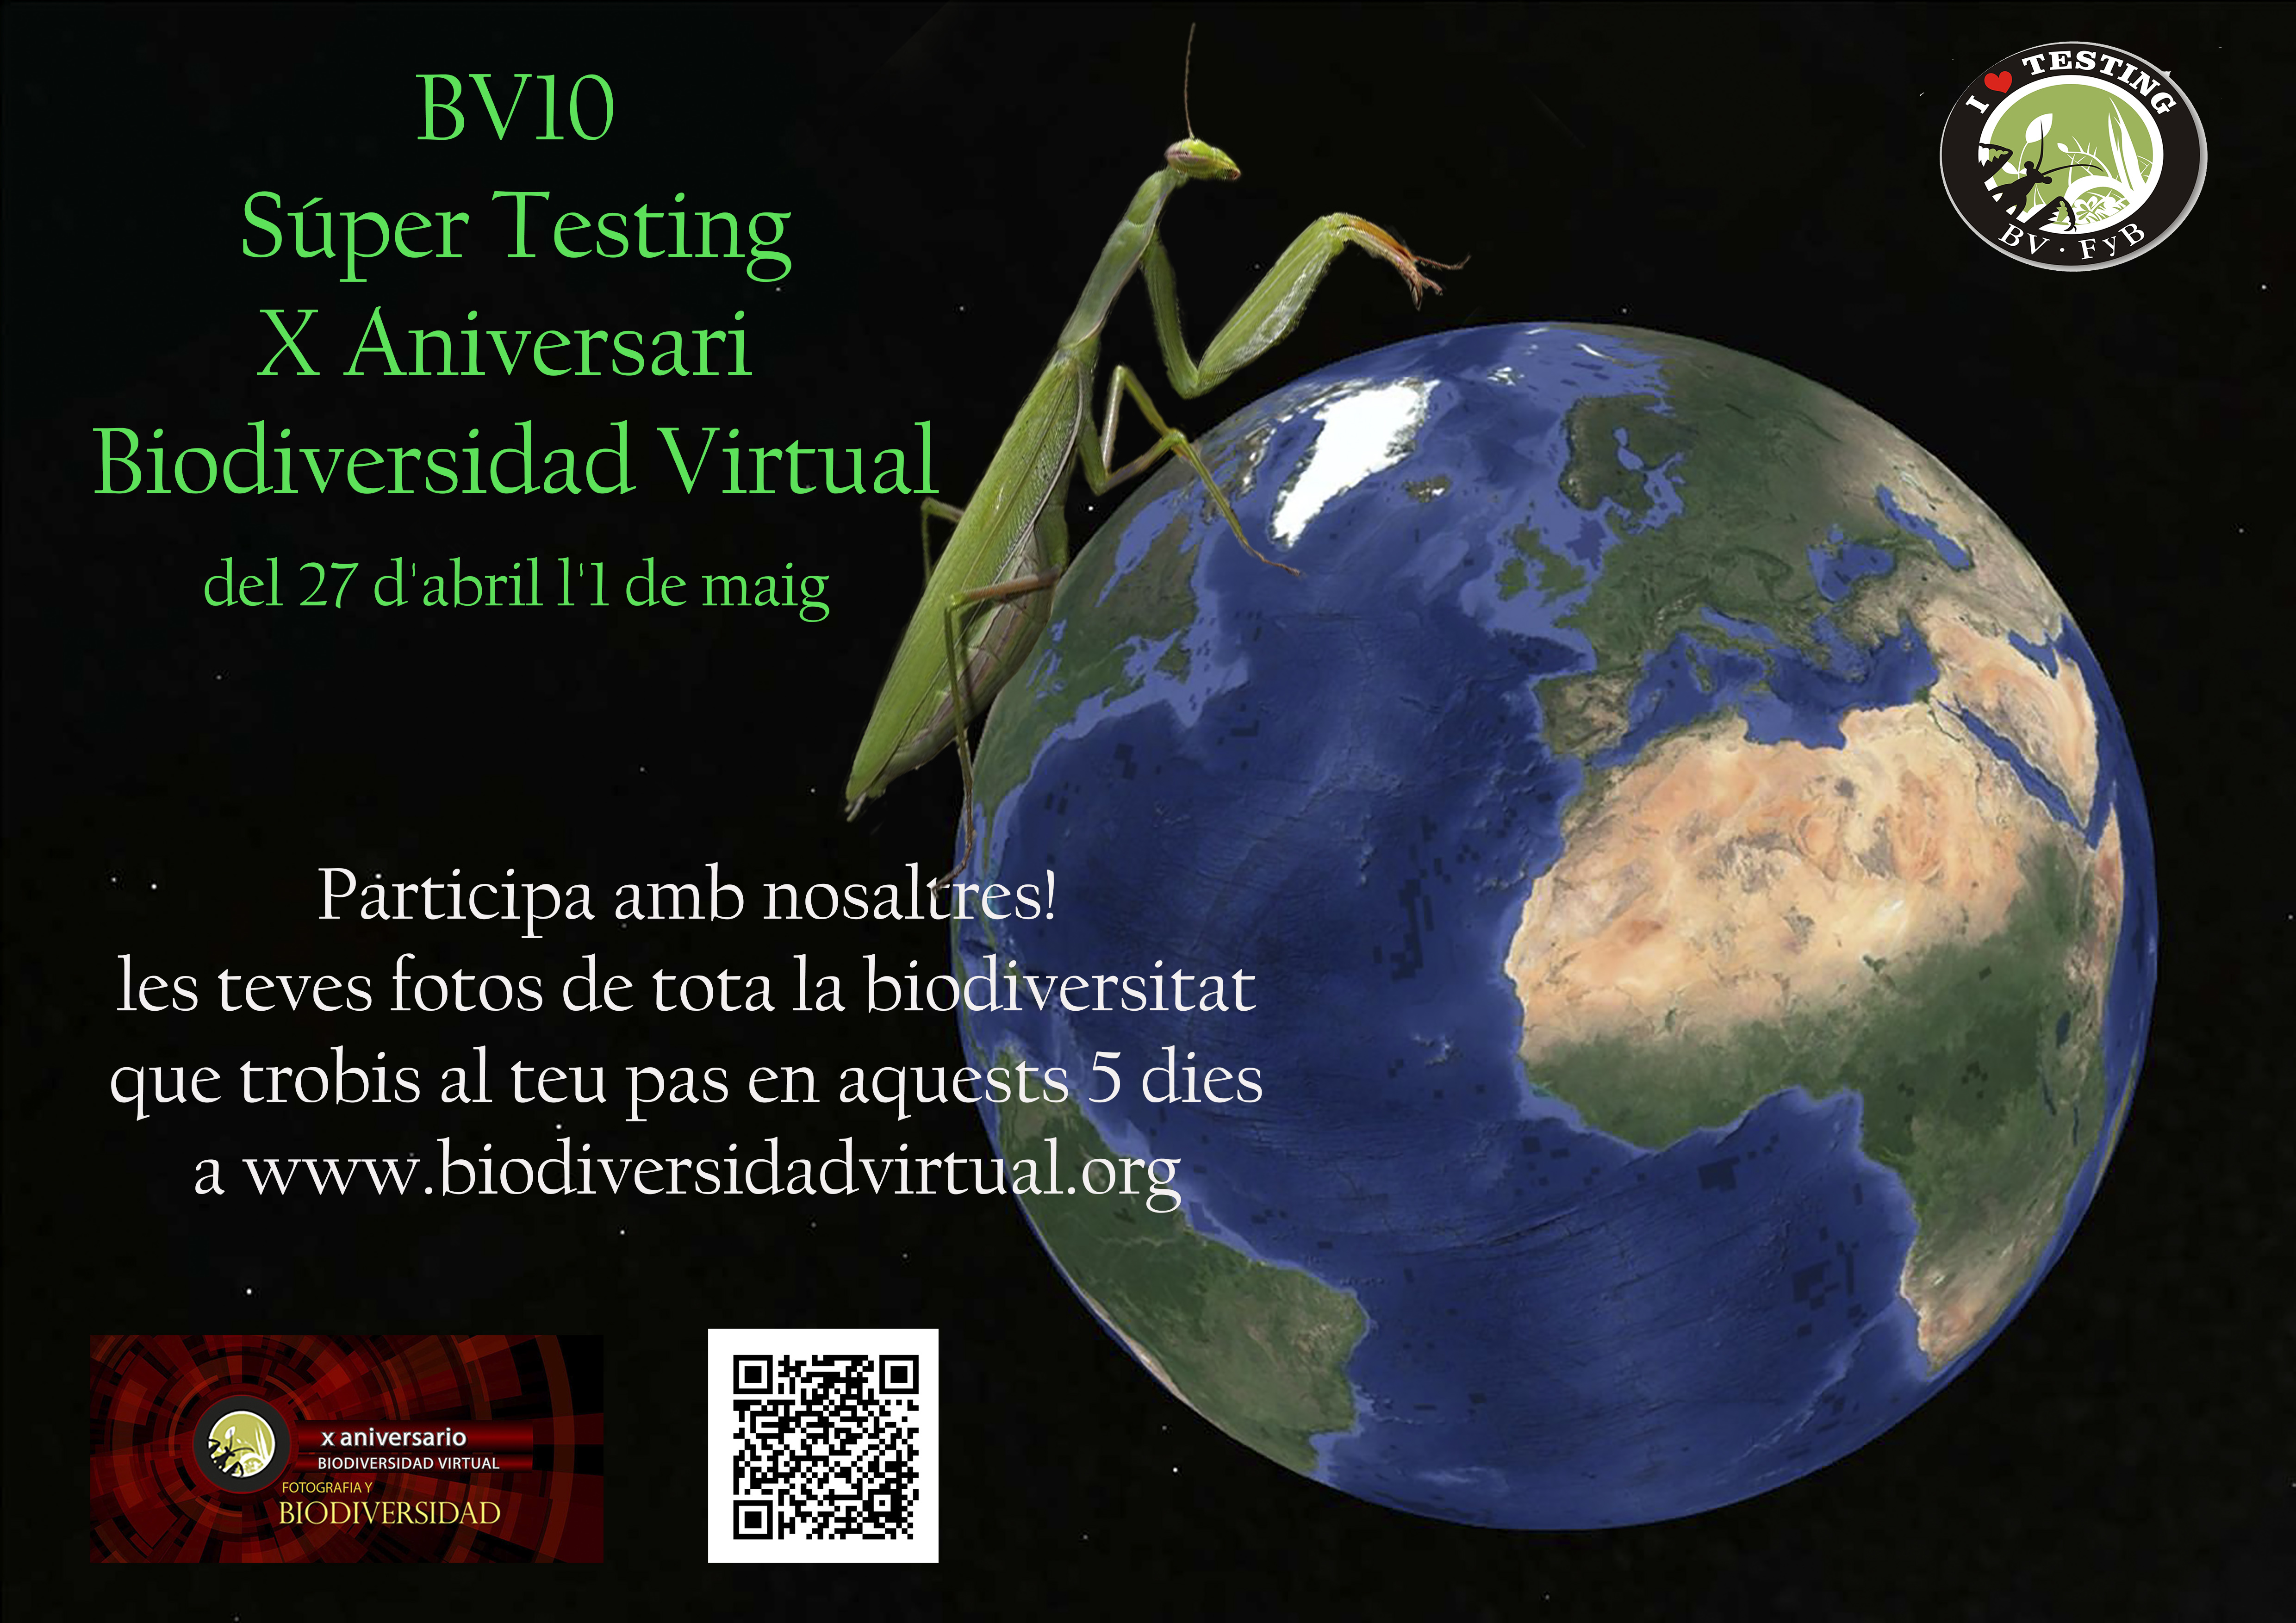 Biodiversitat Virtual  hace 10 años. Fiesta de TESTING